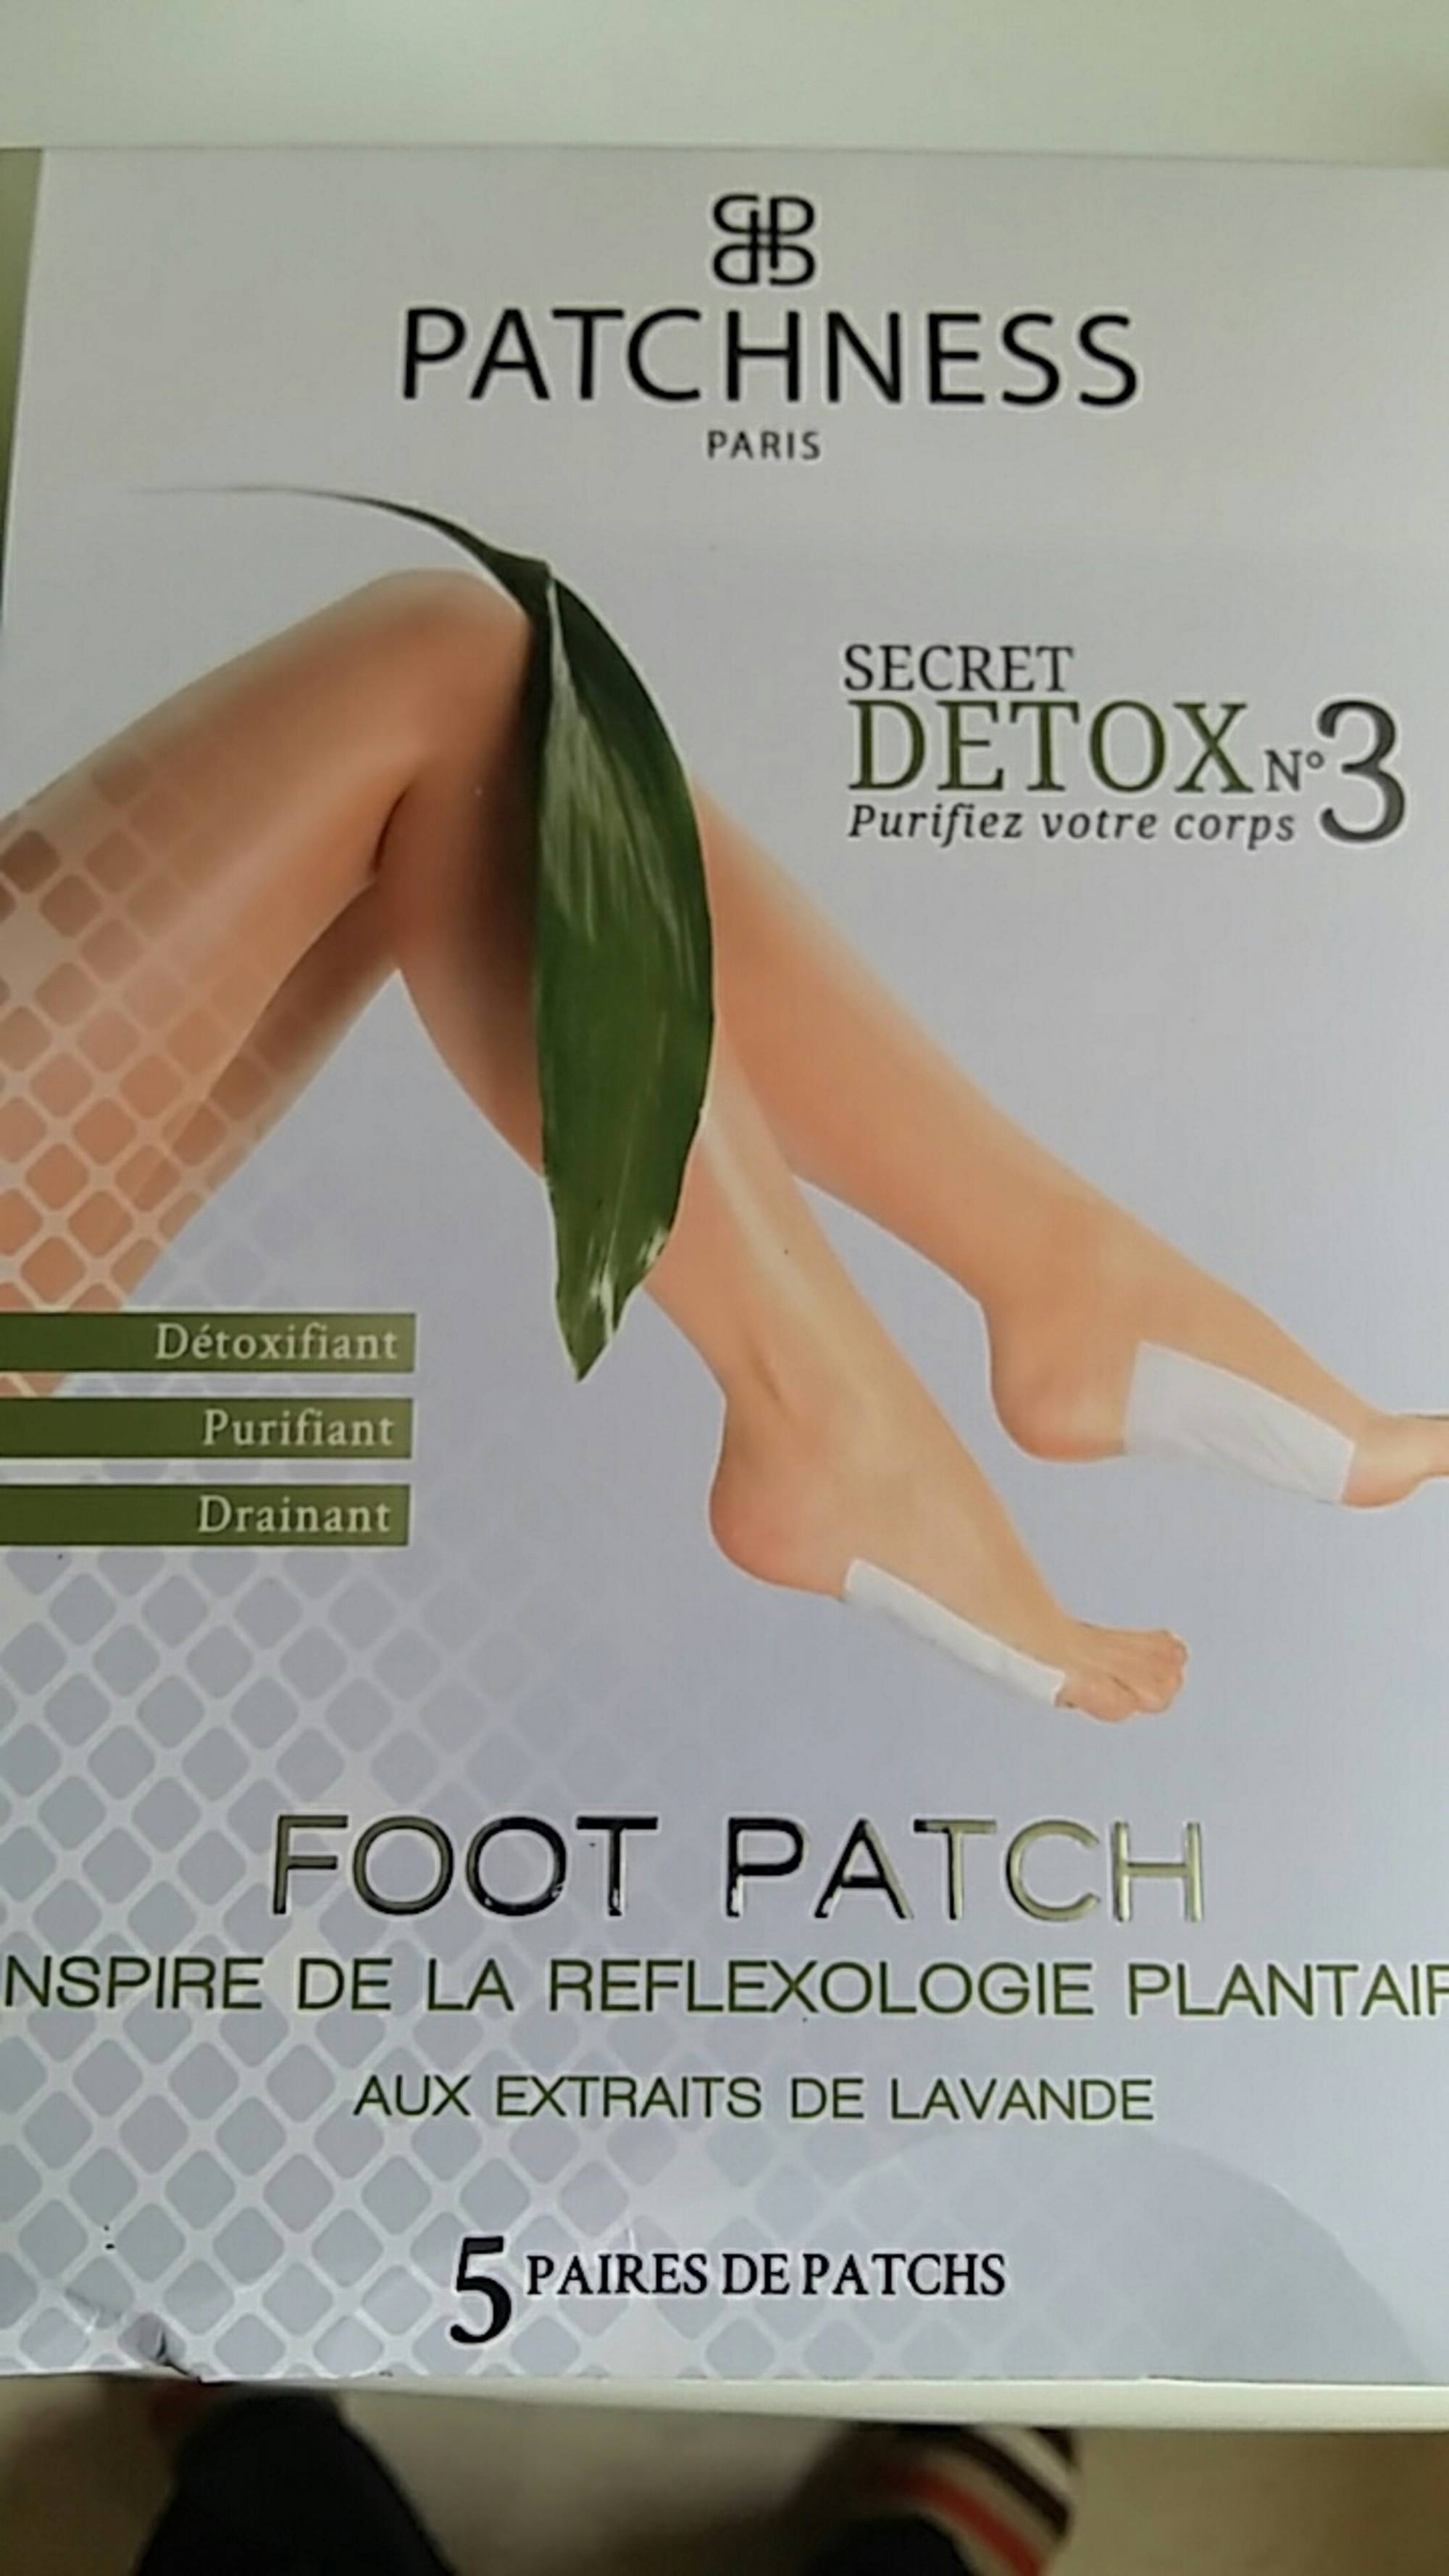 PATCHNESS - Secret detox n°3 - Foot patch